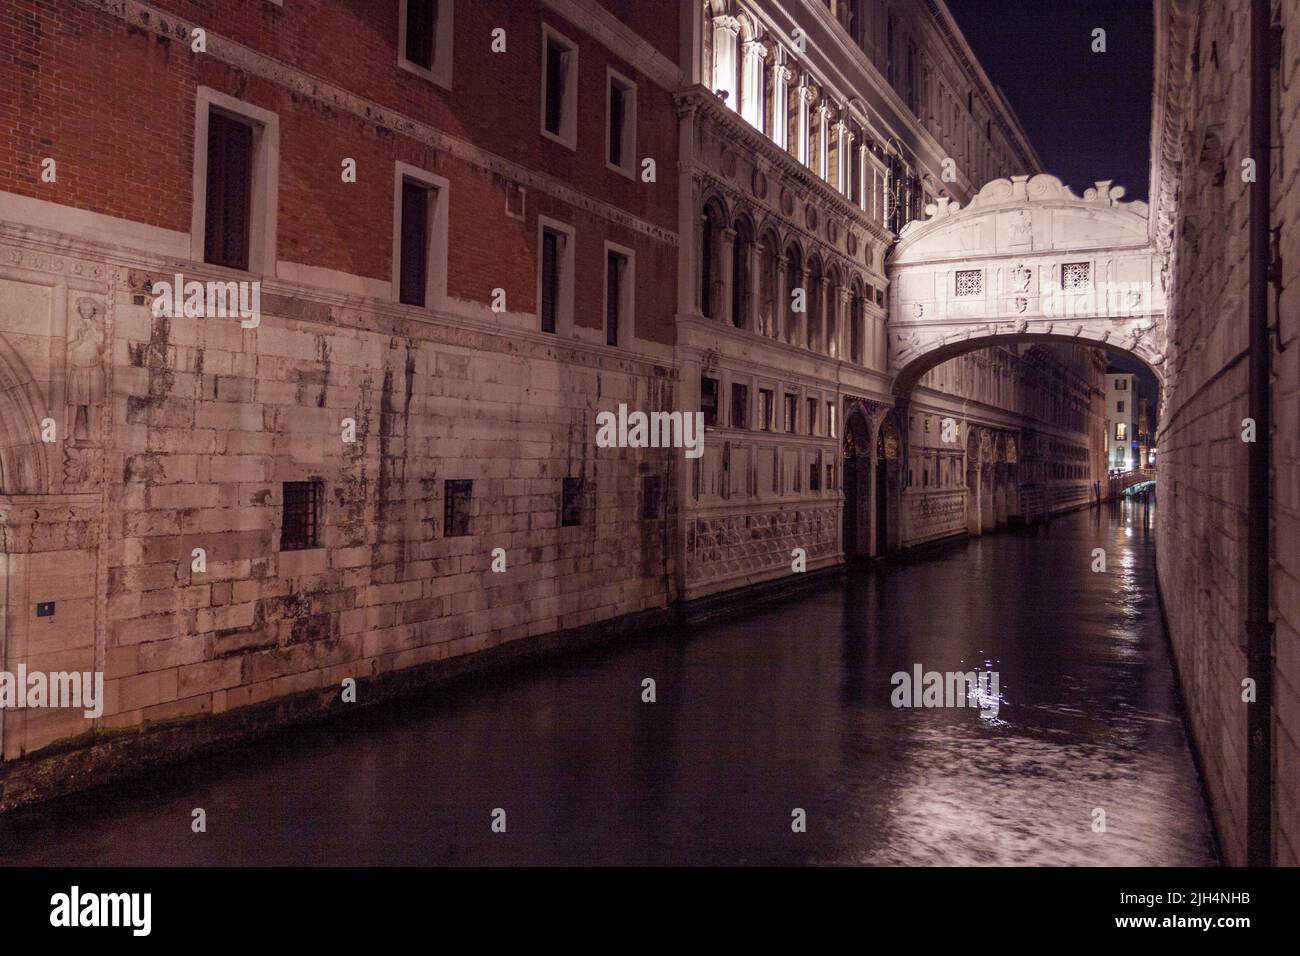 Bridge of sighs at night. Venice, Veneto. Italy Stock Photo